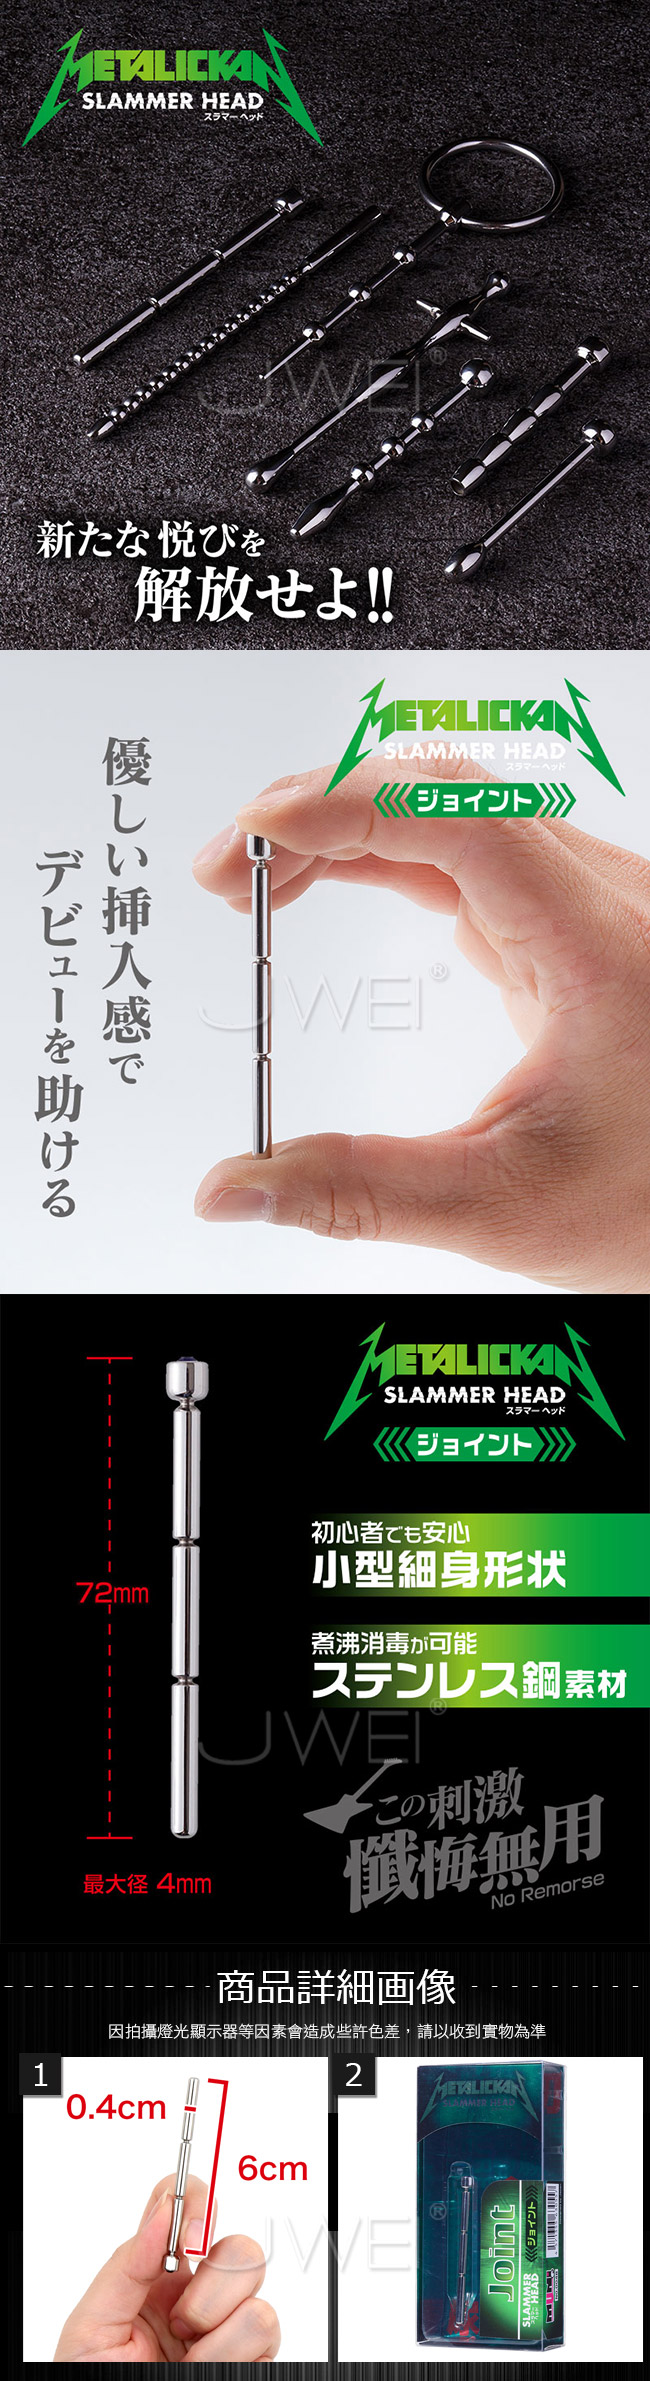 日本原裝進口NPG．METALICKAN Slammer Head 初心者專用不銹鋼馬眼尿道刺激器-Joint